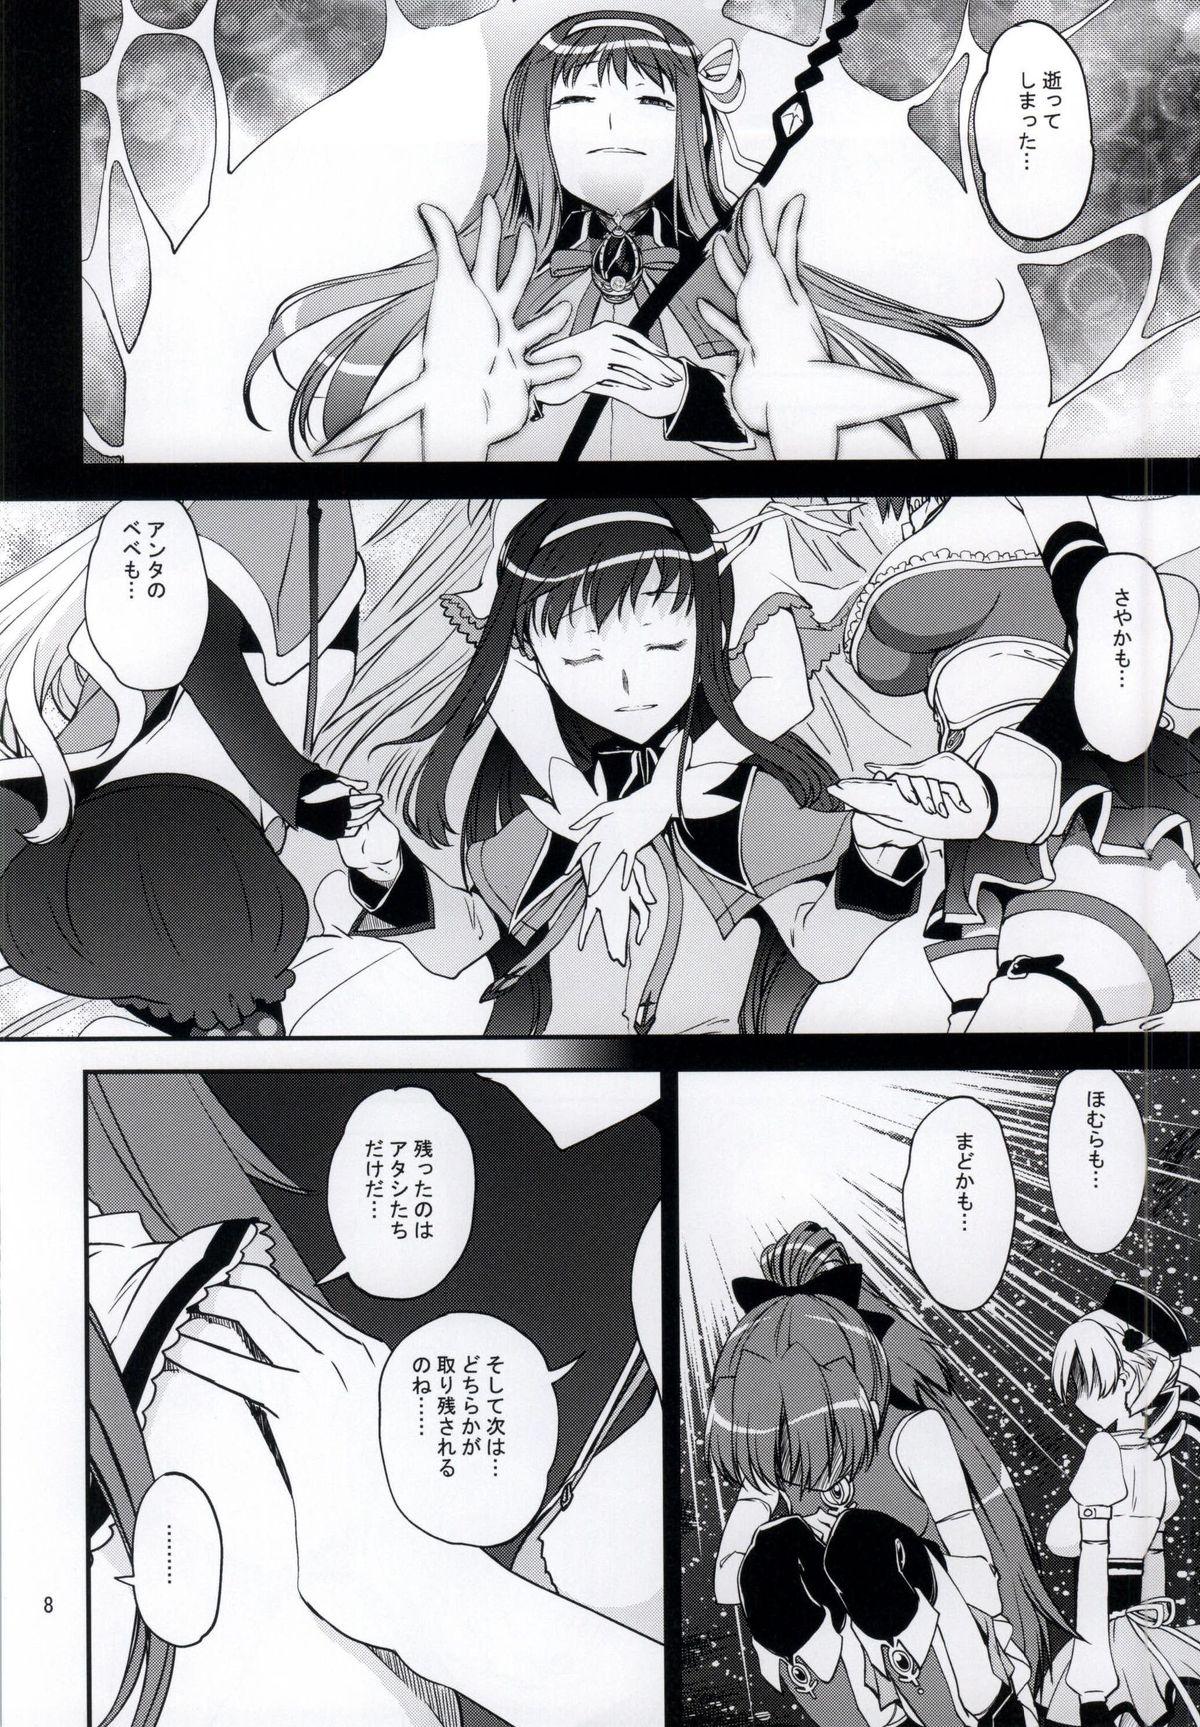 Bucetinha Yottsu no "Hajimete" - Puella magi madoka magica Jocks - Page 5